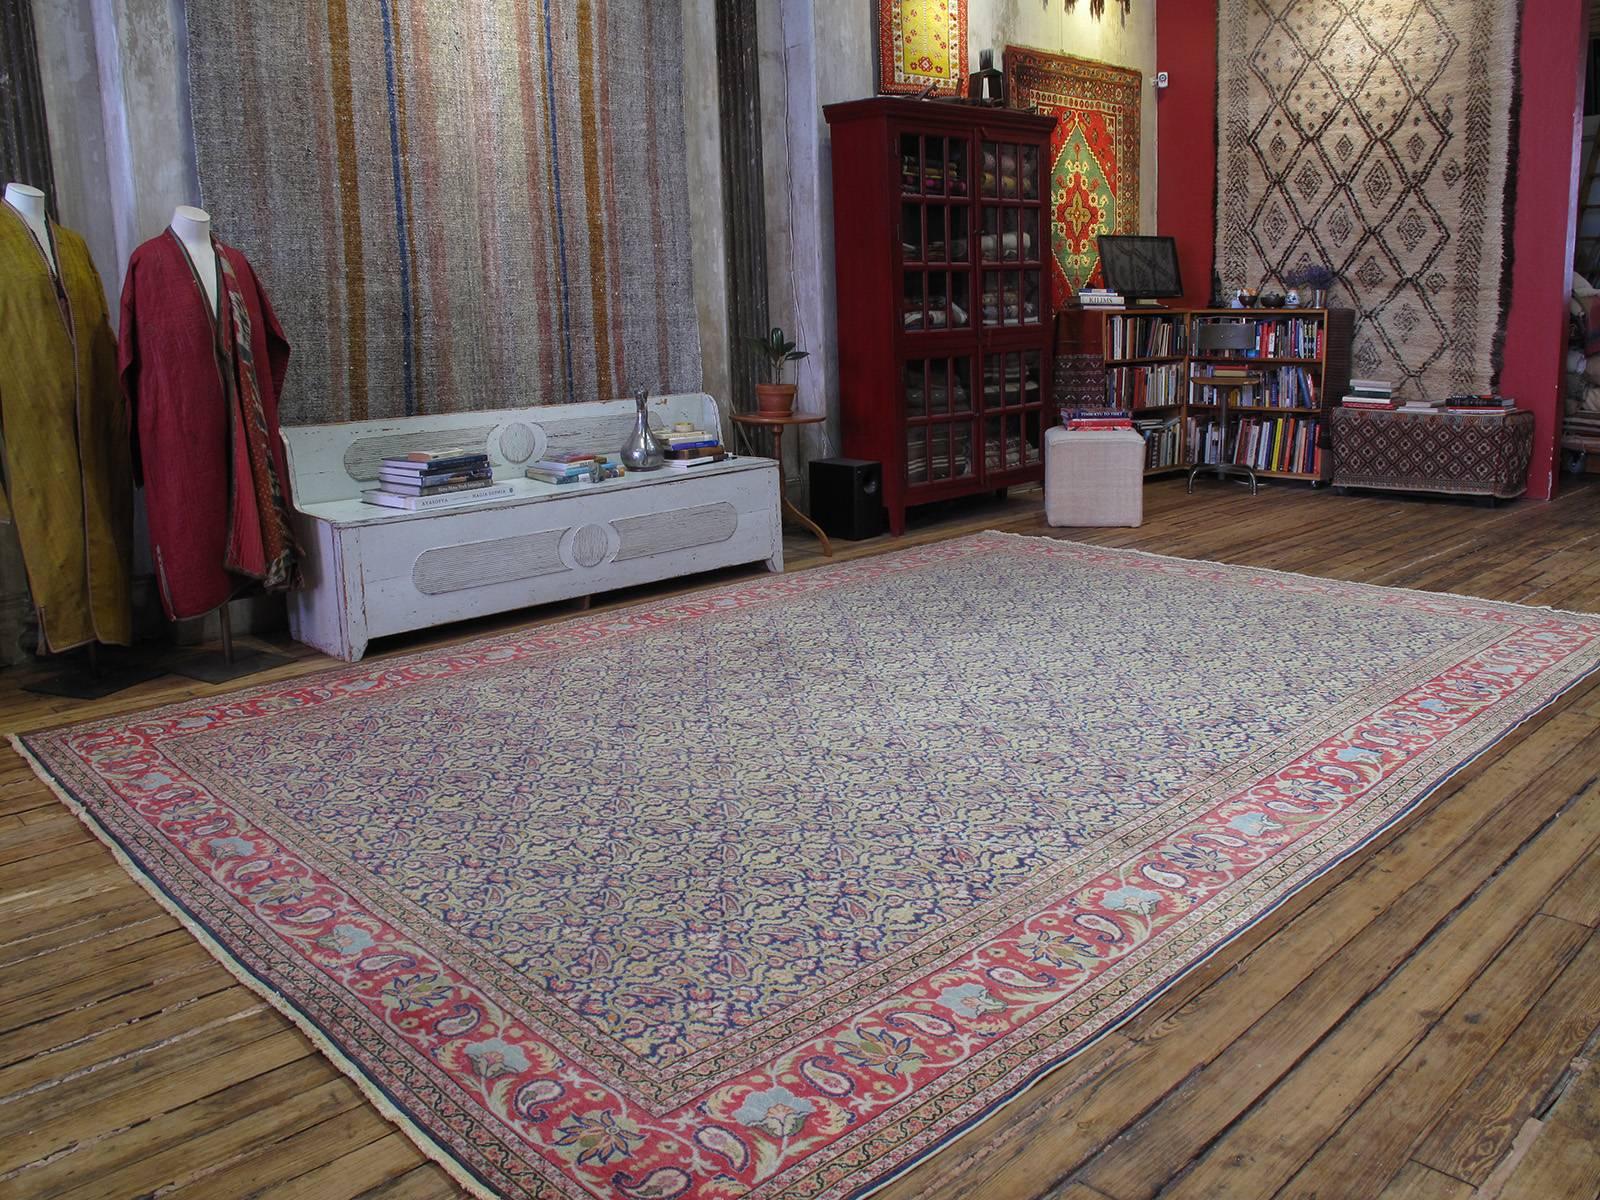 Fantastischer Kayseri Teppich oder Vorleger. Ein großartiger alter türkischer Teppich aus der Region Kayseri in der Zentraltürkei mit einem sehr ungewöhnlichen Muster und einer ungewöhnlichen Farbpalette. Obwohl sie von klassischen Themen inspiriert